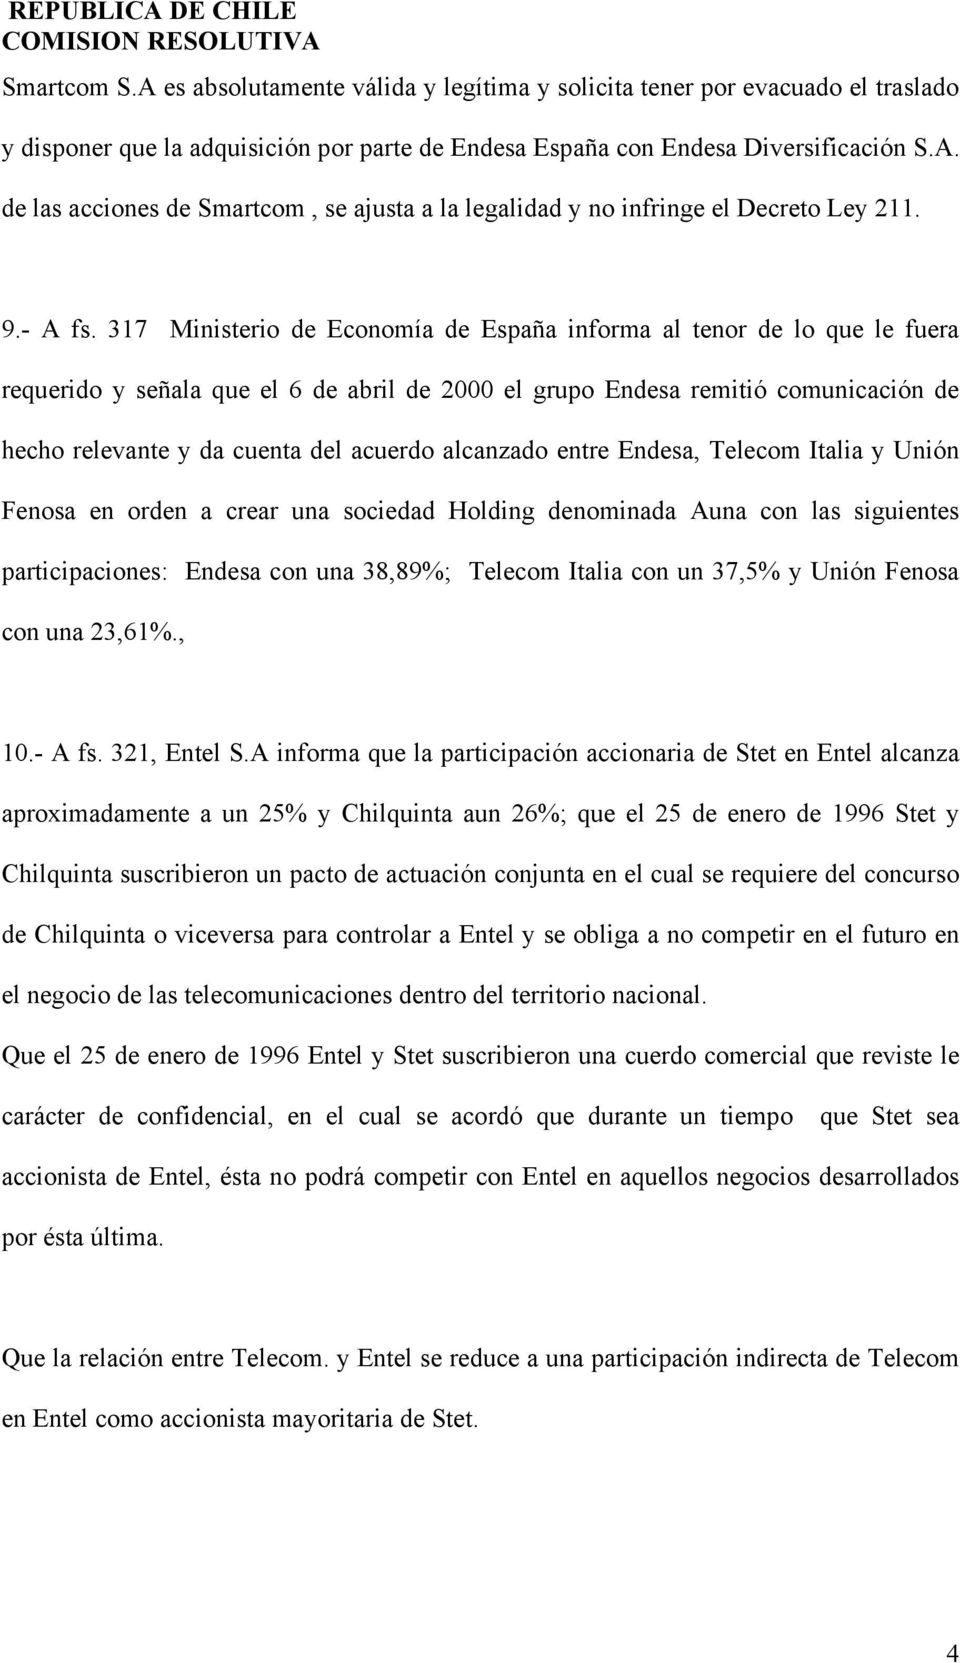 317 Ministerio de Economía de España informa al tenor de lo que le fuera requerido y señala que el 6 de abril de 2000 el grupo Endesa remitió comunicación de hecho relevante y da cuenta del acuerdo